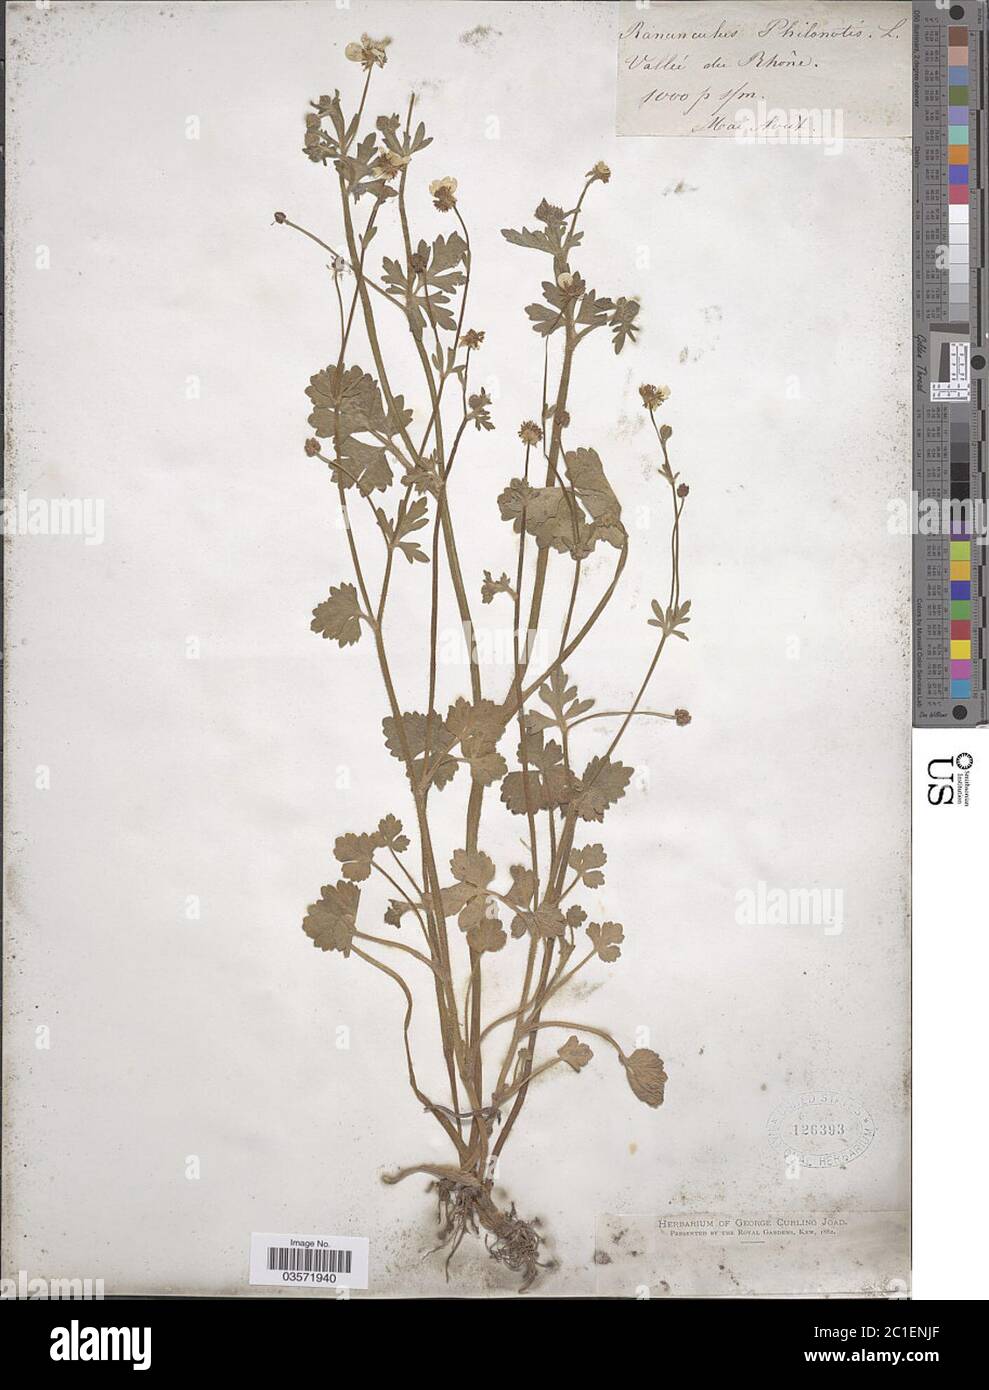 Ranunculus philonotis Ehrh Ranunculus philonotis Ehrh. Stock Photo